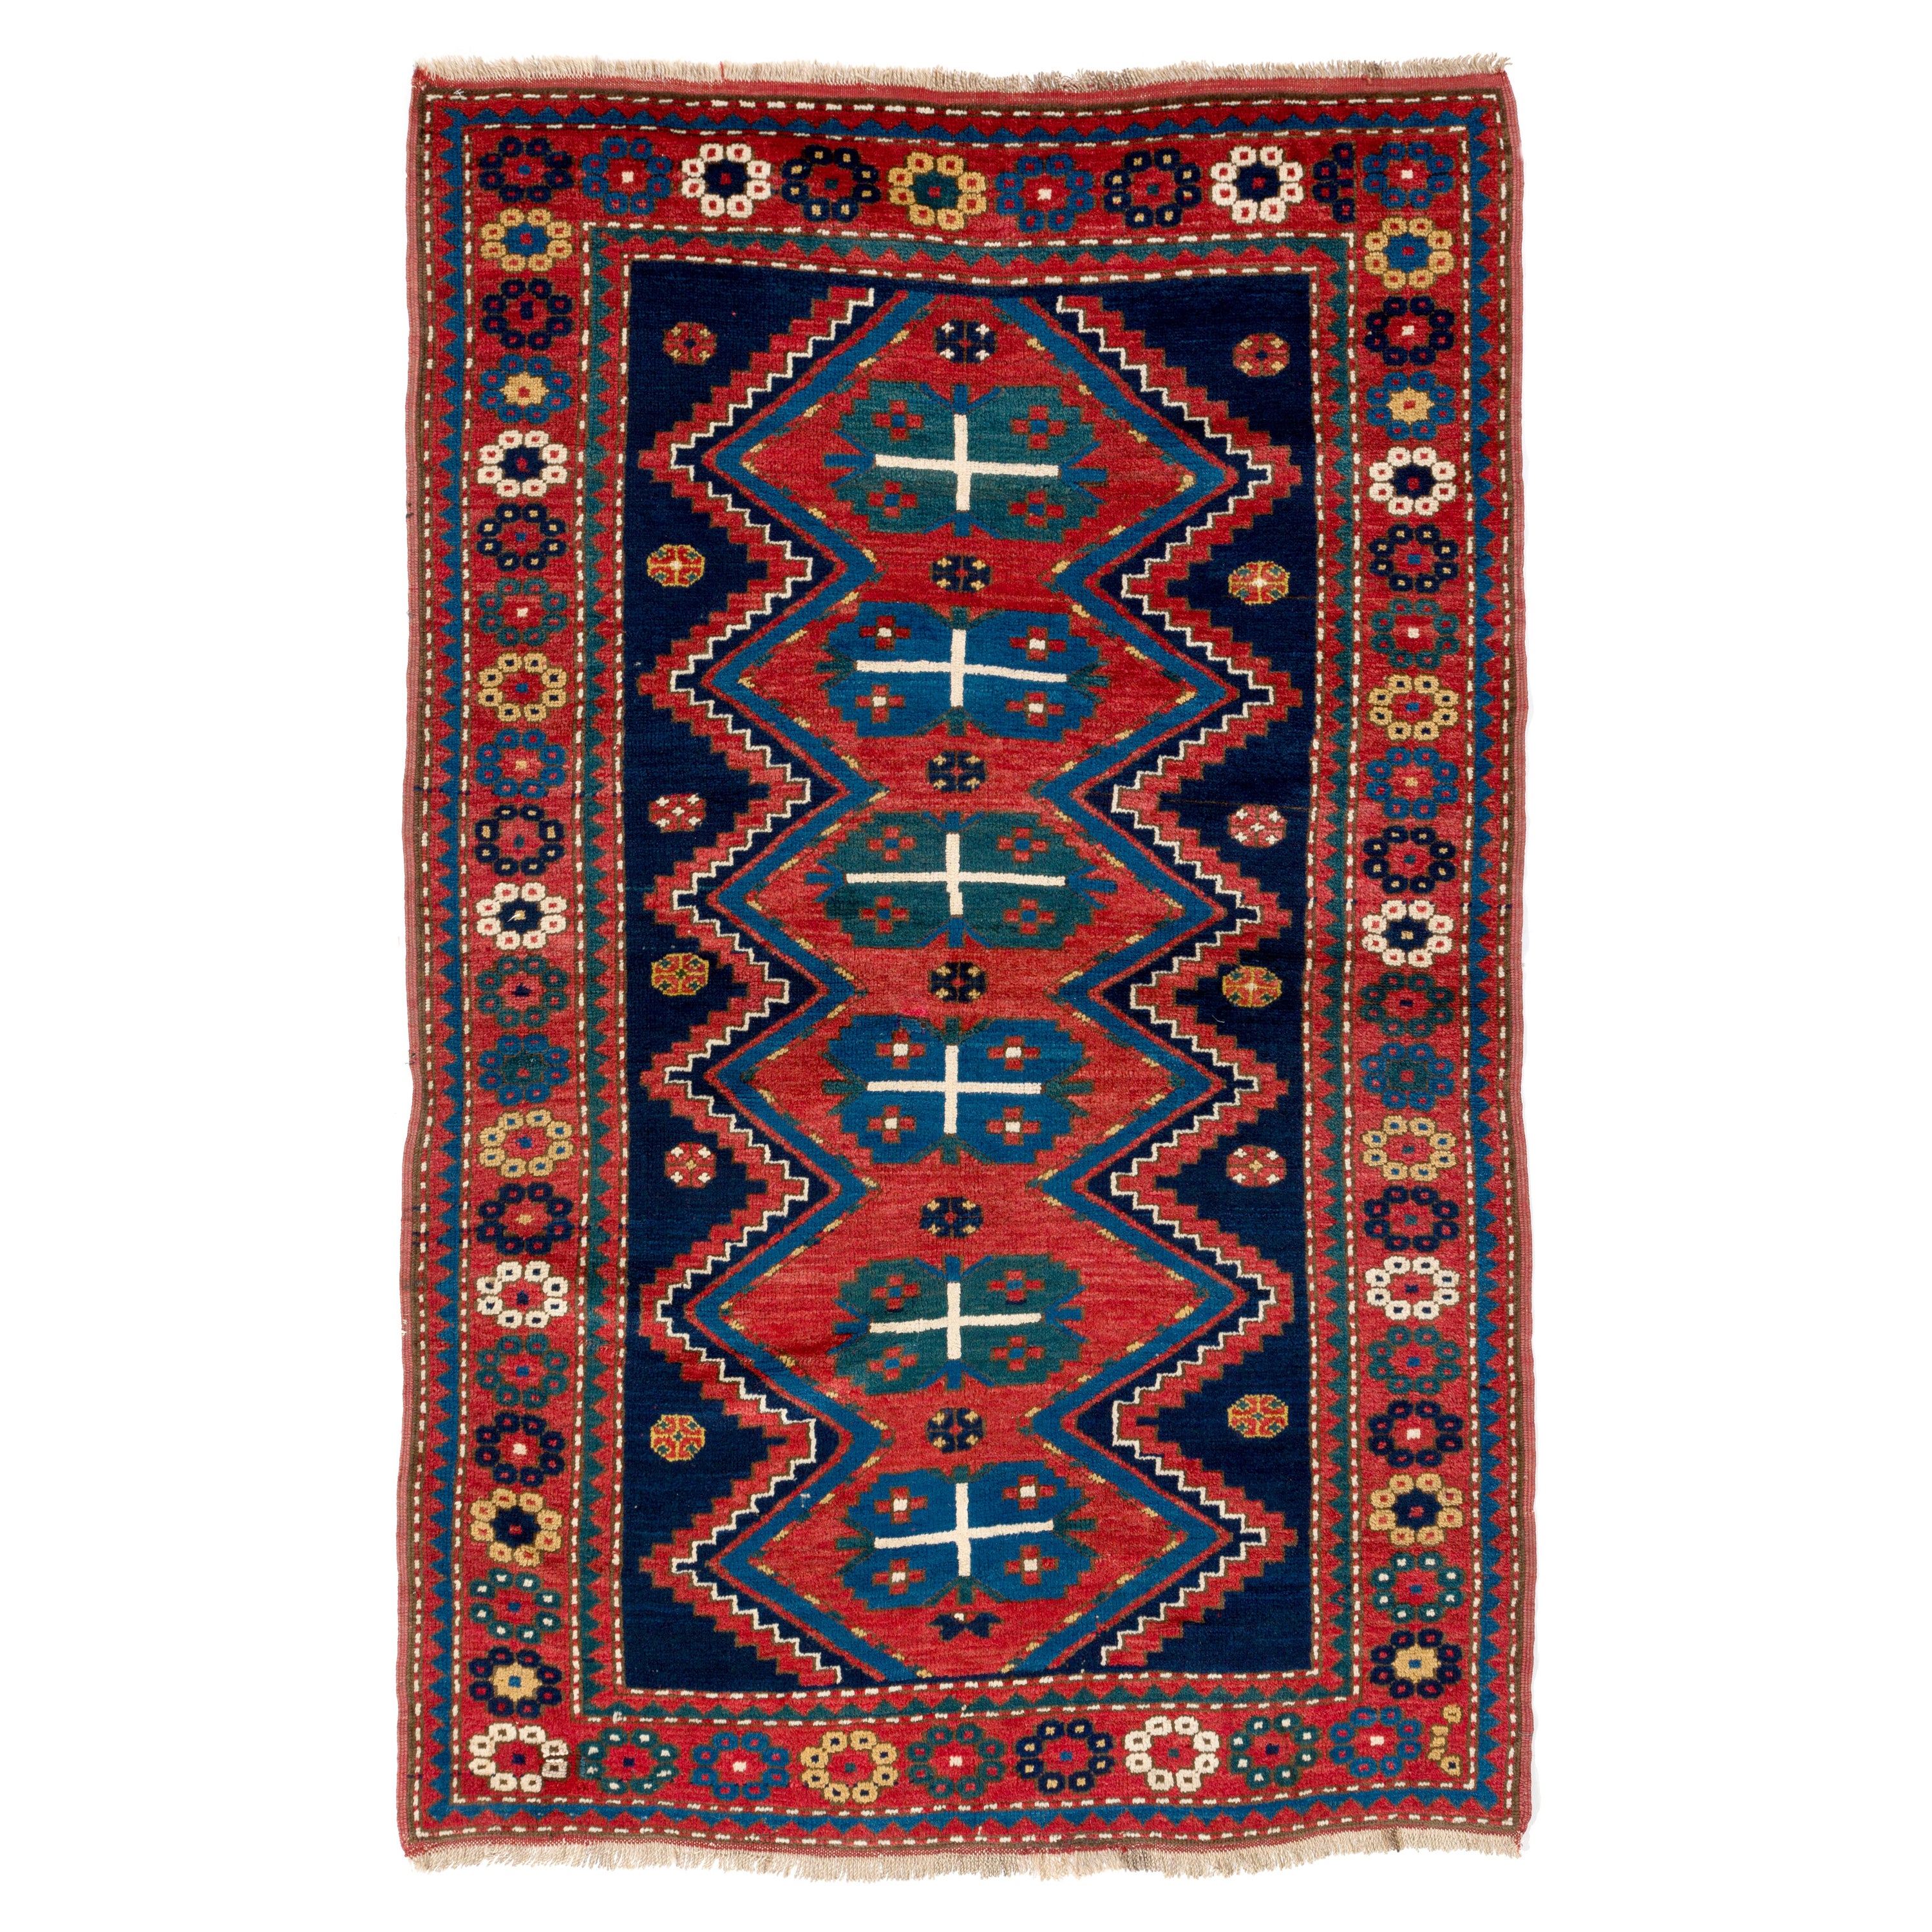 5.4x7 ft Antique Caucasian Kazak Rug, Circa 1900, All Original